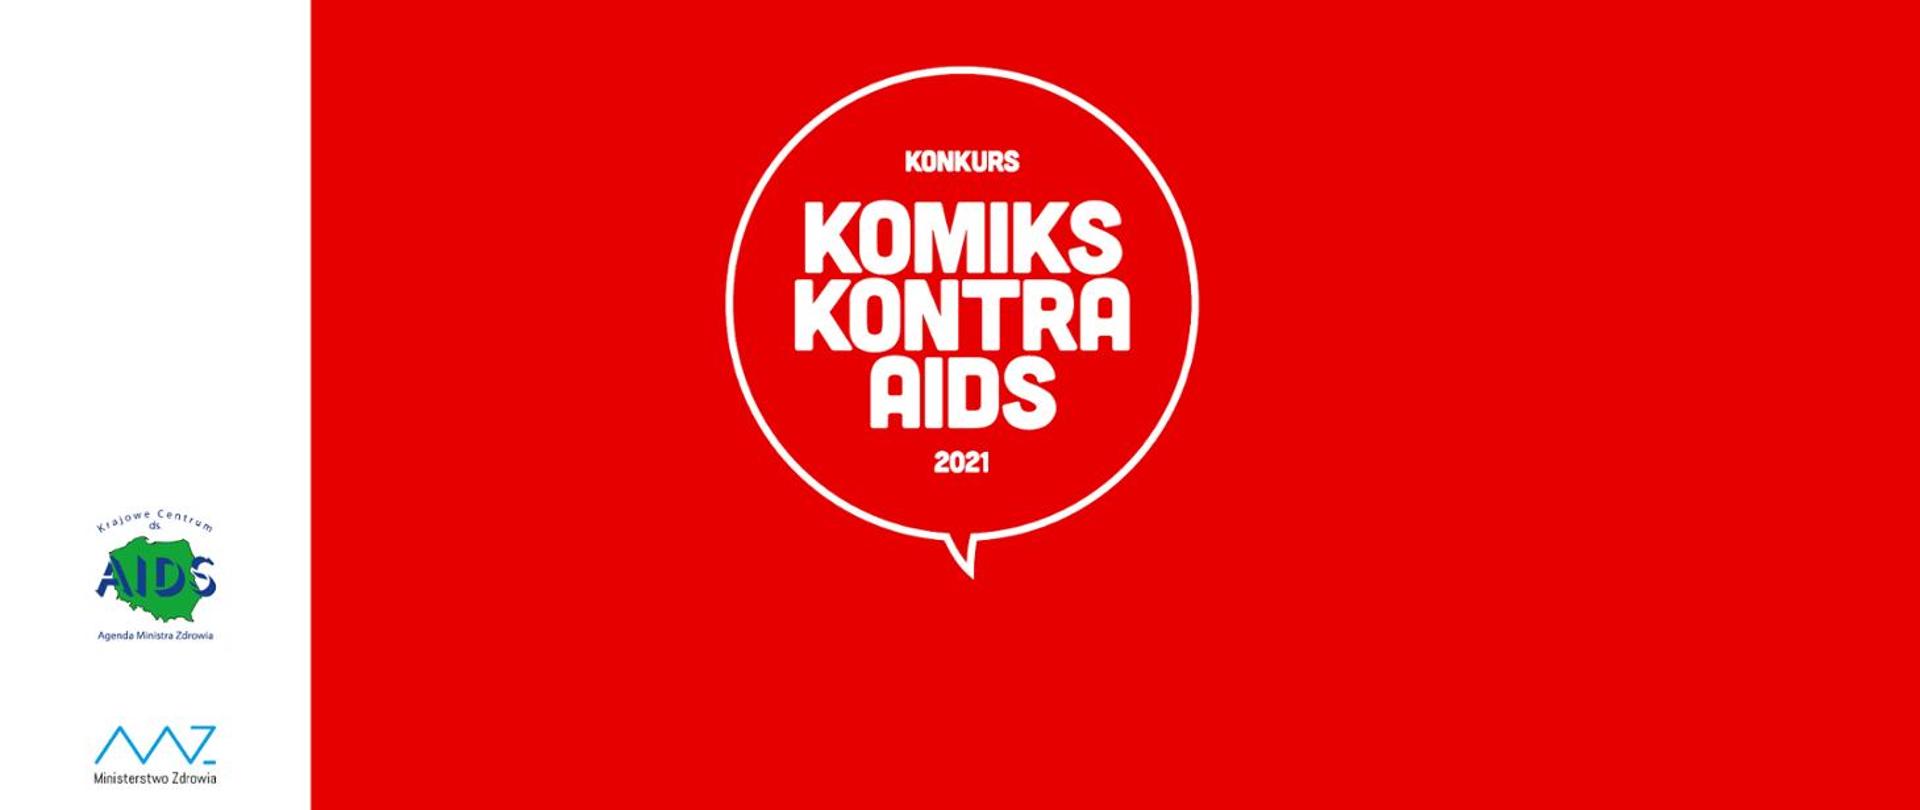 Krajowe Centrum ds. AIDS ogłosiło ogólnopolski konkurs "Komiks kontra AIDS 2021". Celem konkursu jest zwiększenie świadomości na temat HIV/AIDS wśród ogółu społeczeństwa.